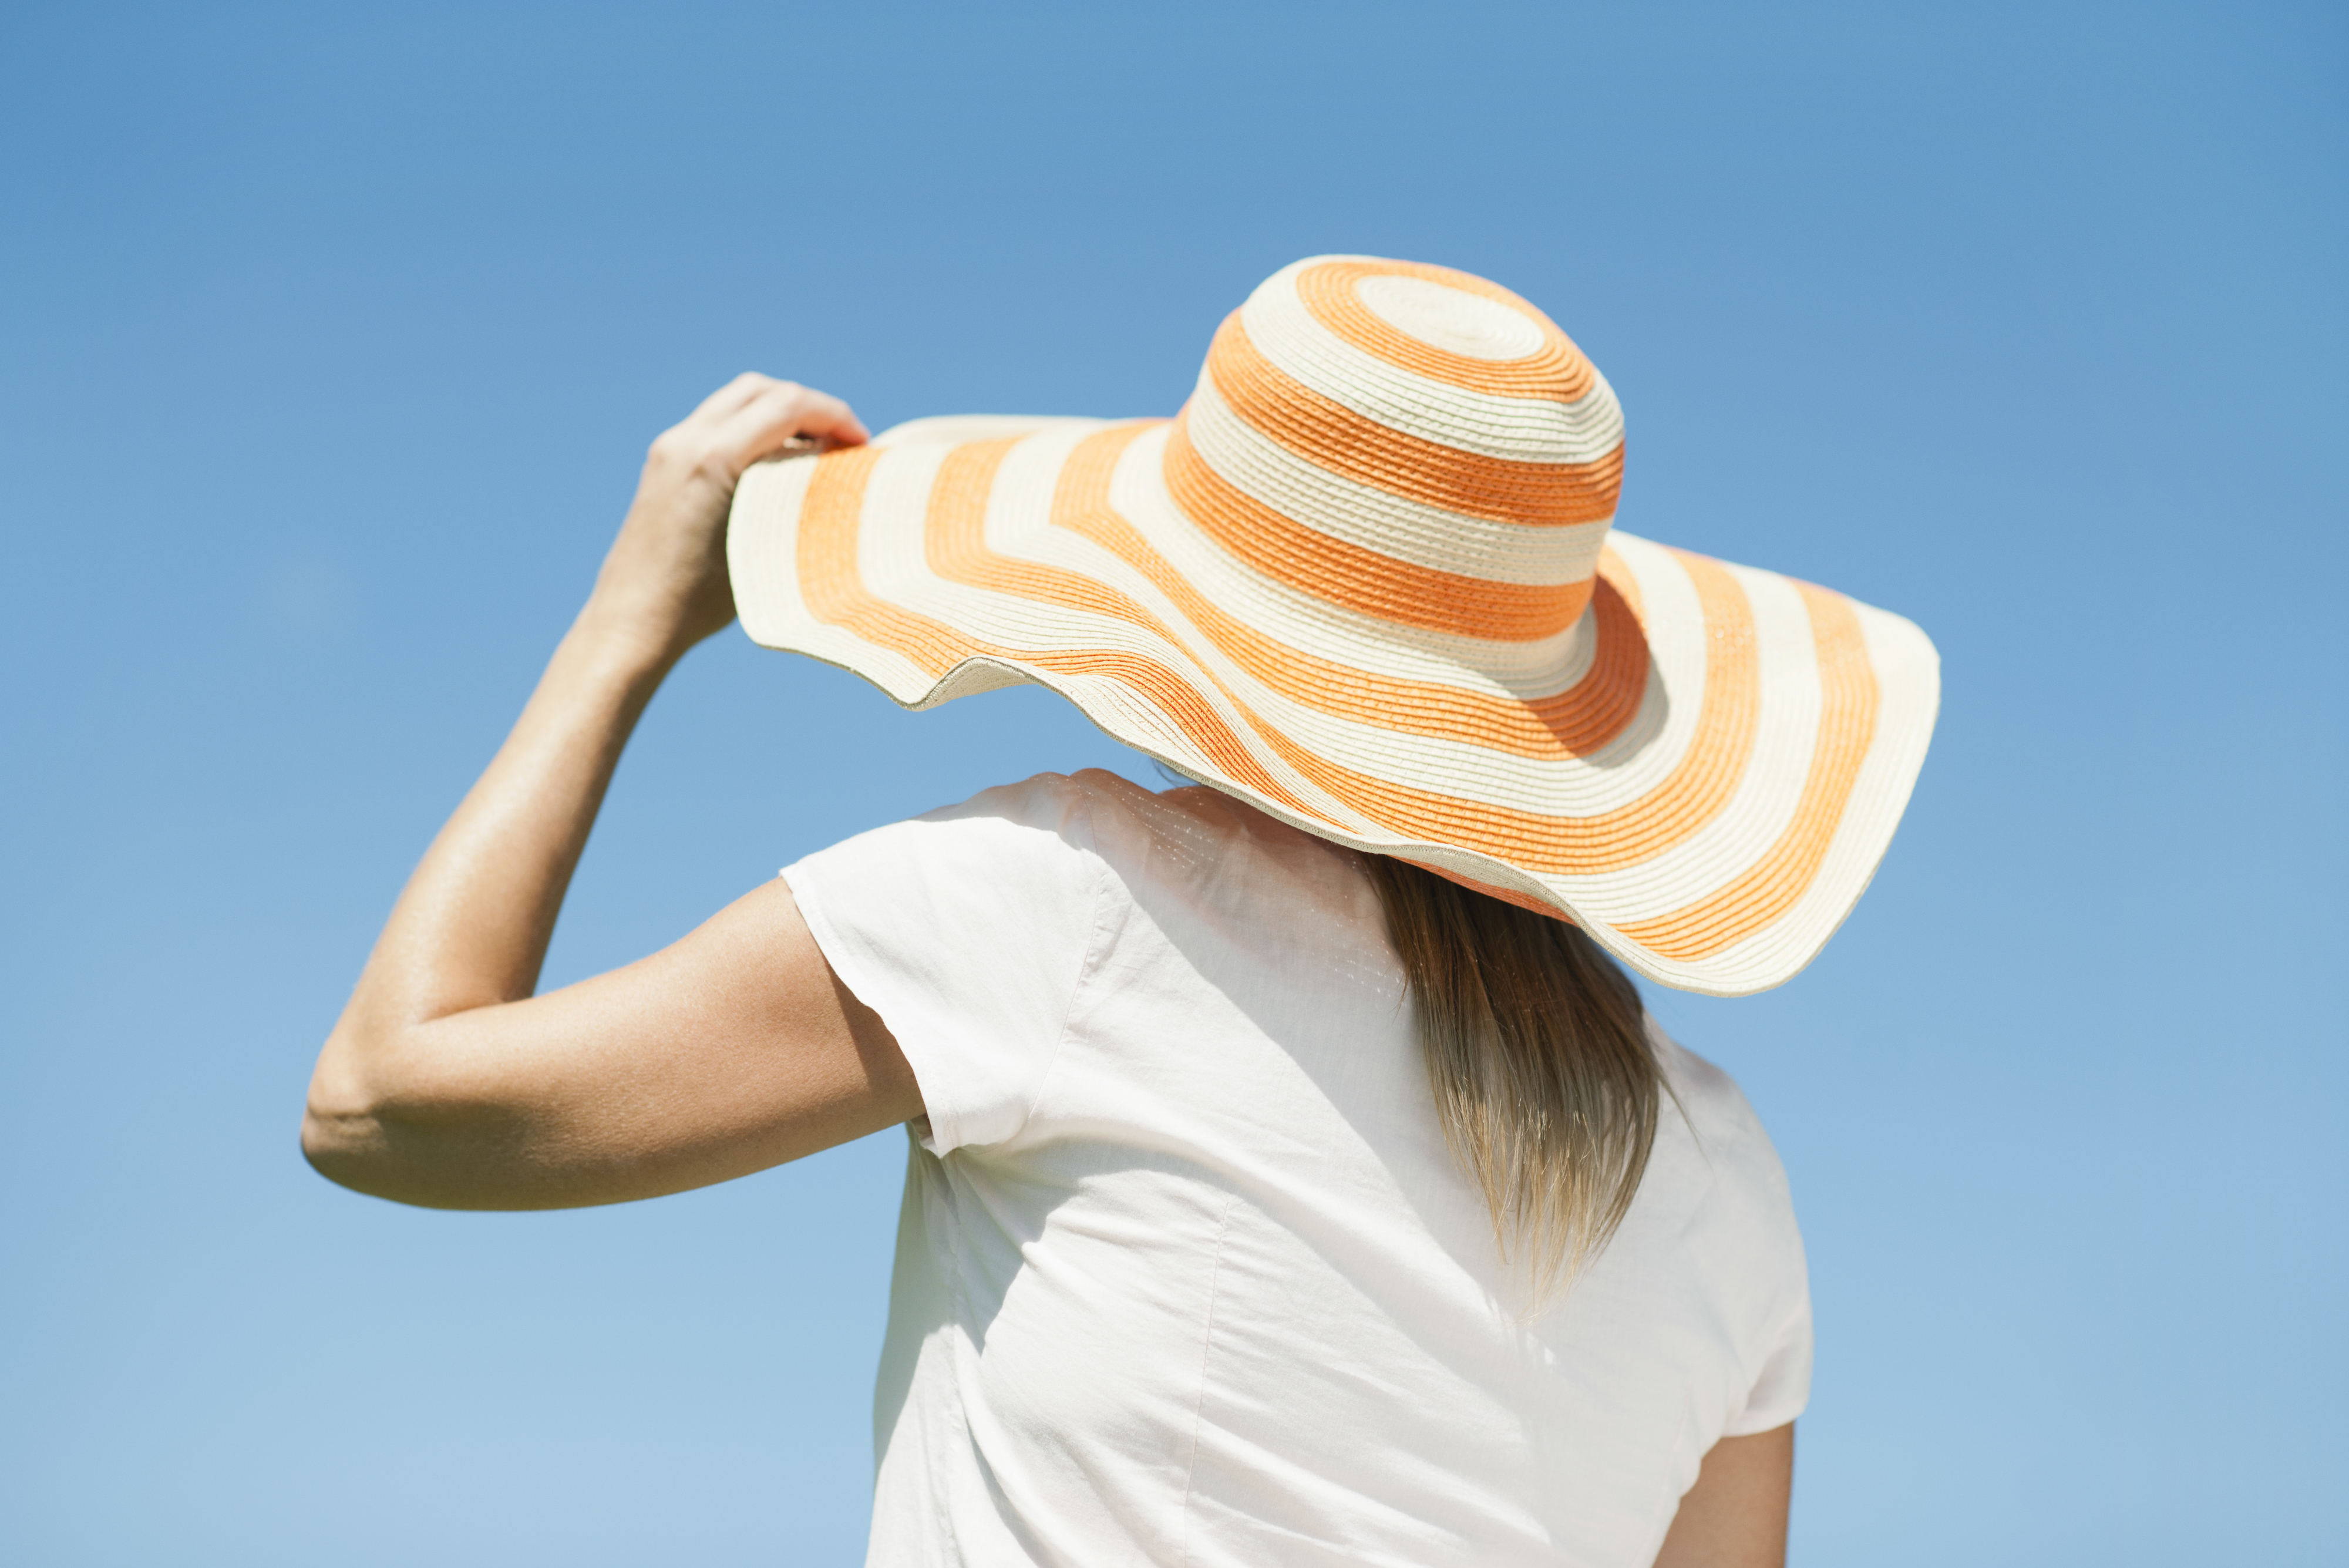 woman wearing a sun hat